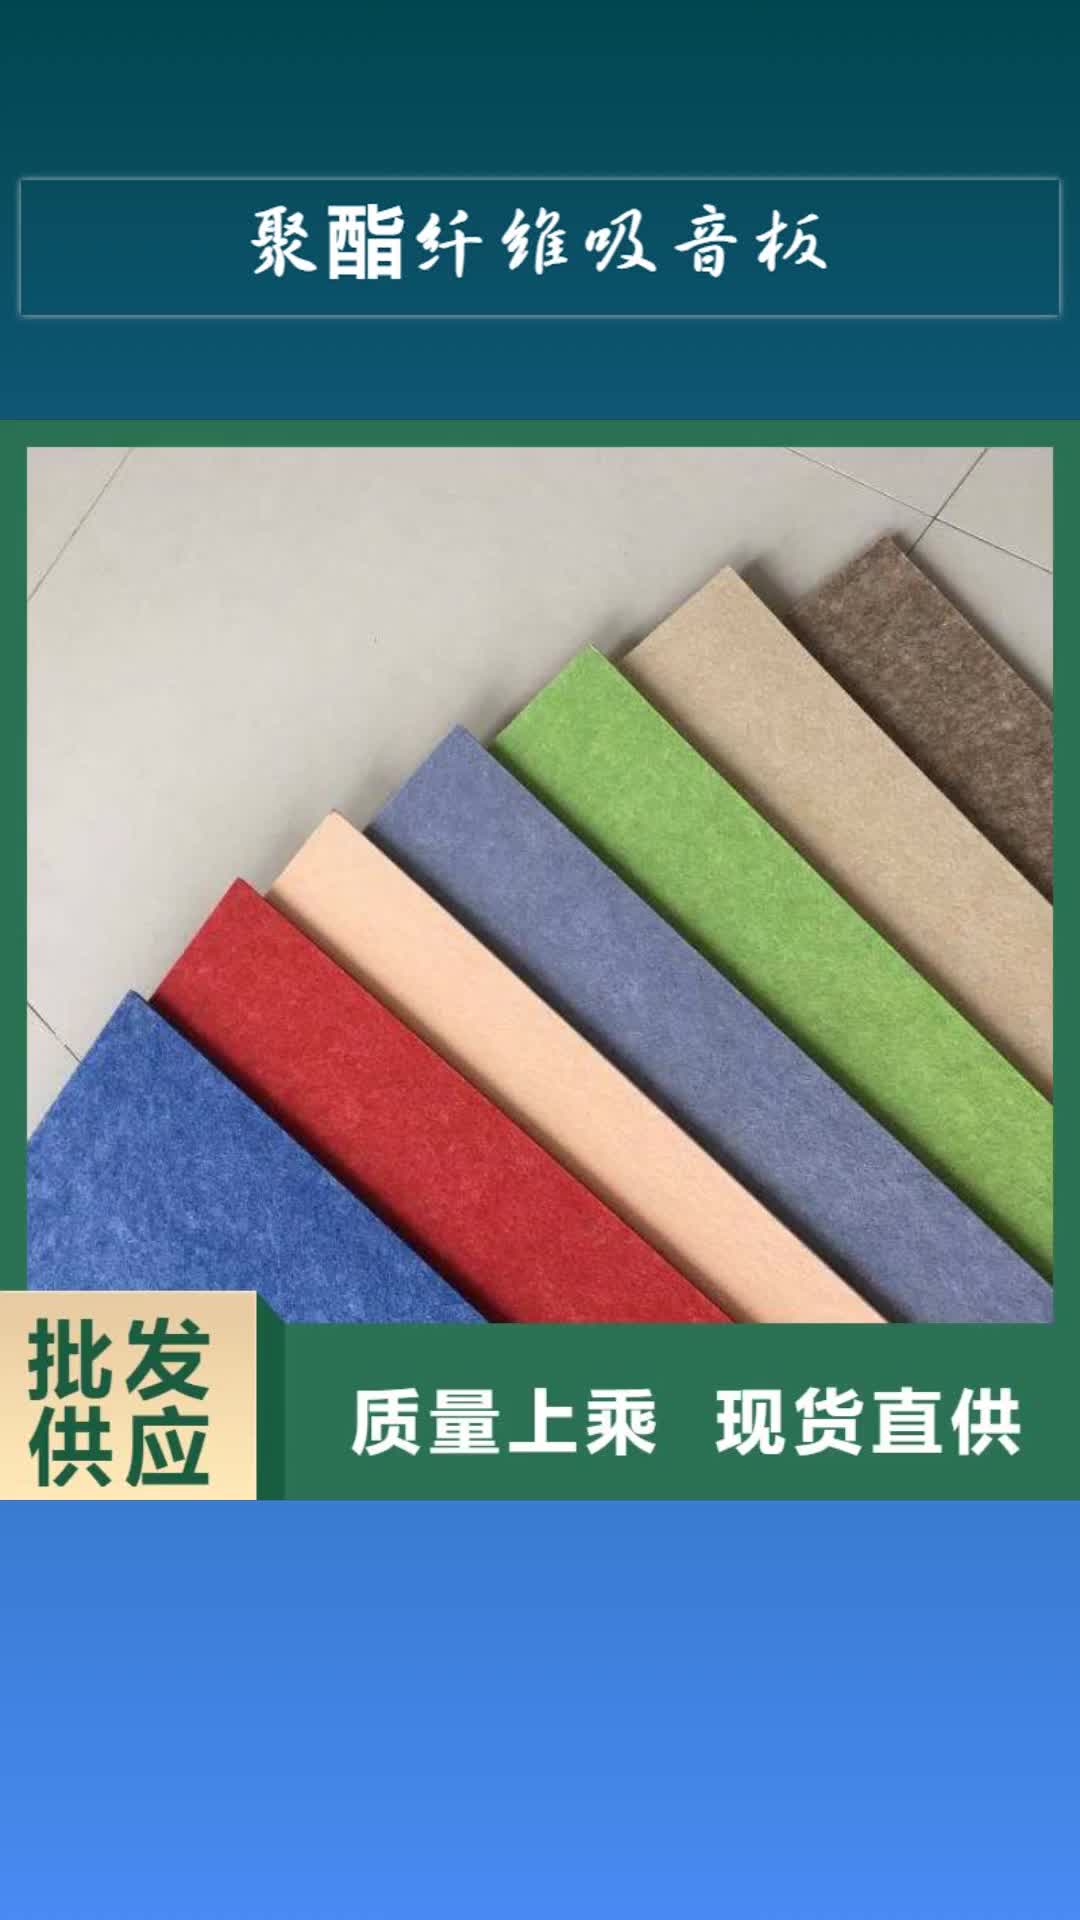 【深圳 聚酯纤维吸音板石塑地板追求品质】